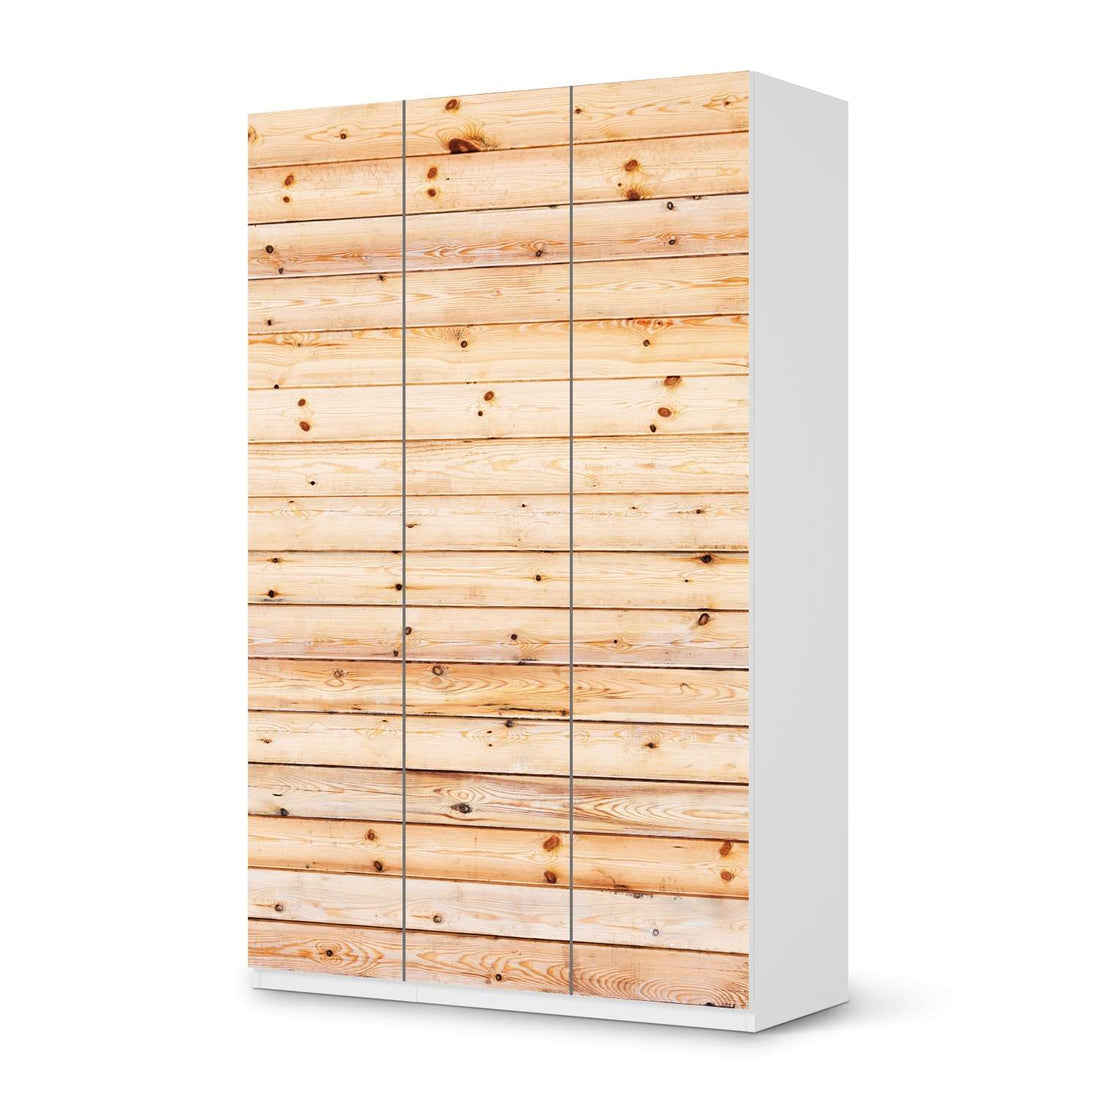 Selbstklebende Folie Bright Planks - IKEA Pax Schrank 236 cm Höhe - 3 Türen - weiss